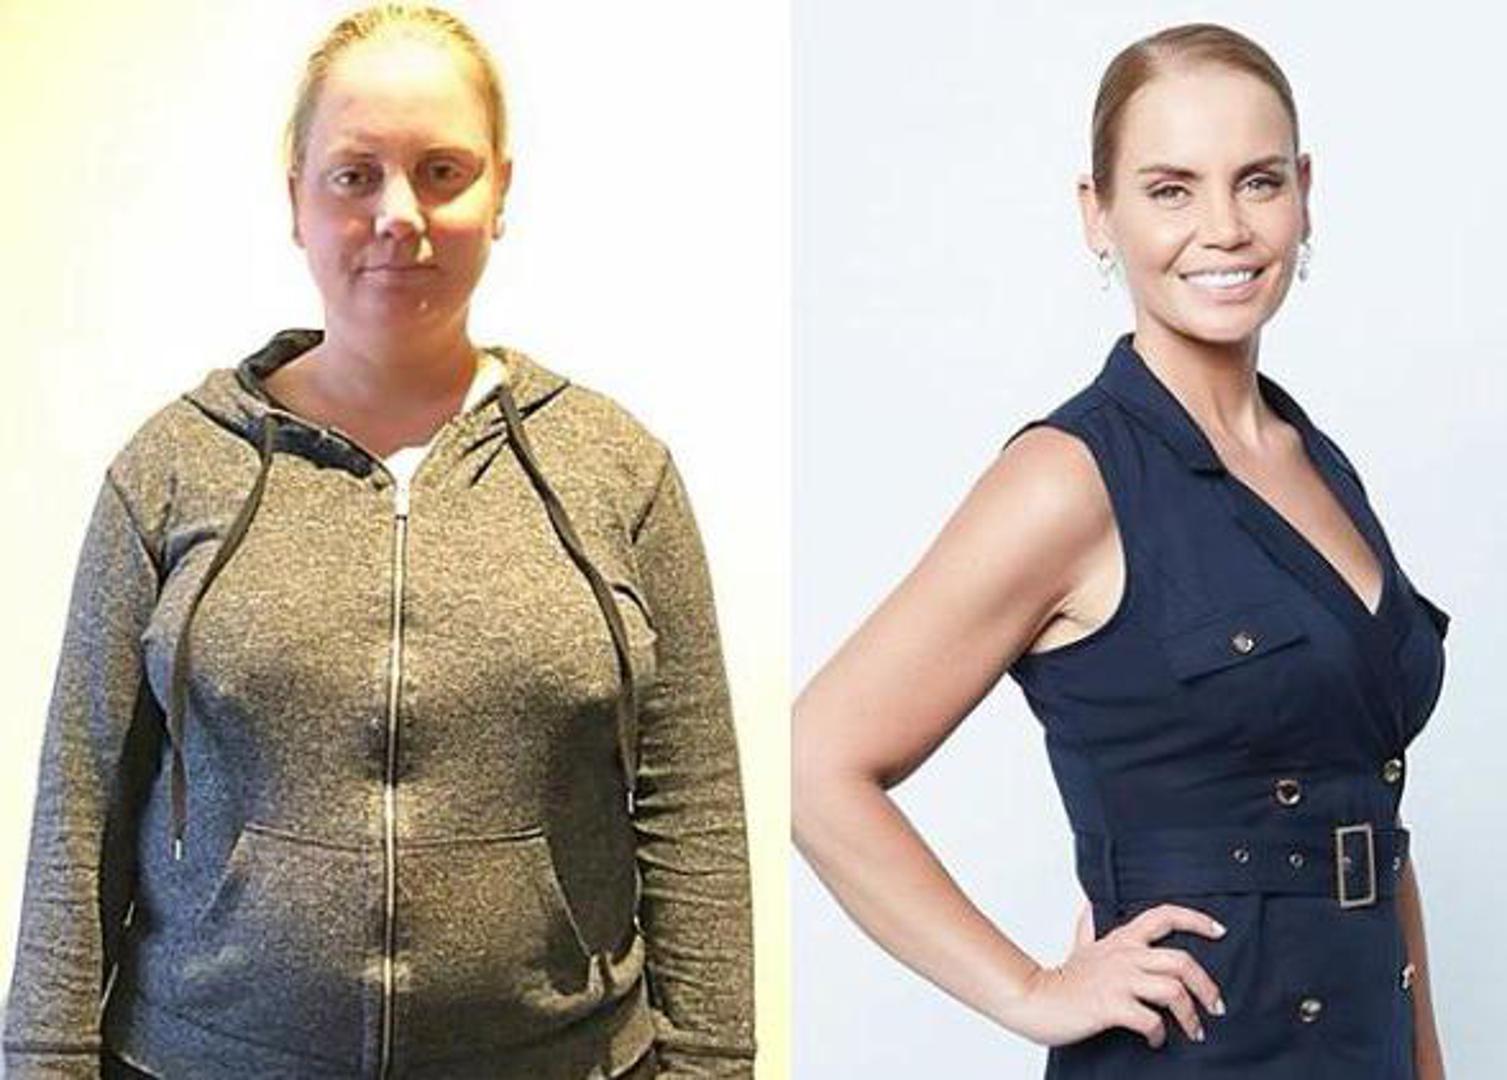 No, nakon toga je smršavjela čak 53 kilograma za 18 mjeseci i mnogima je inspiracija. 